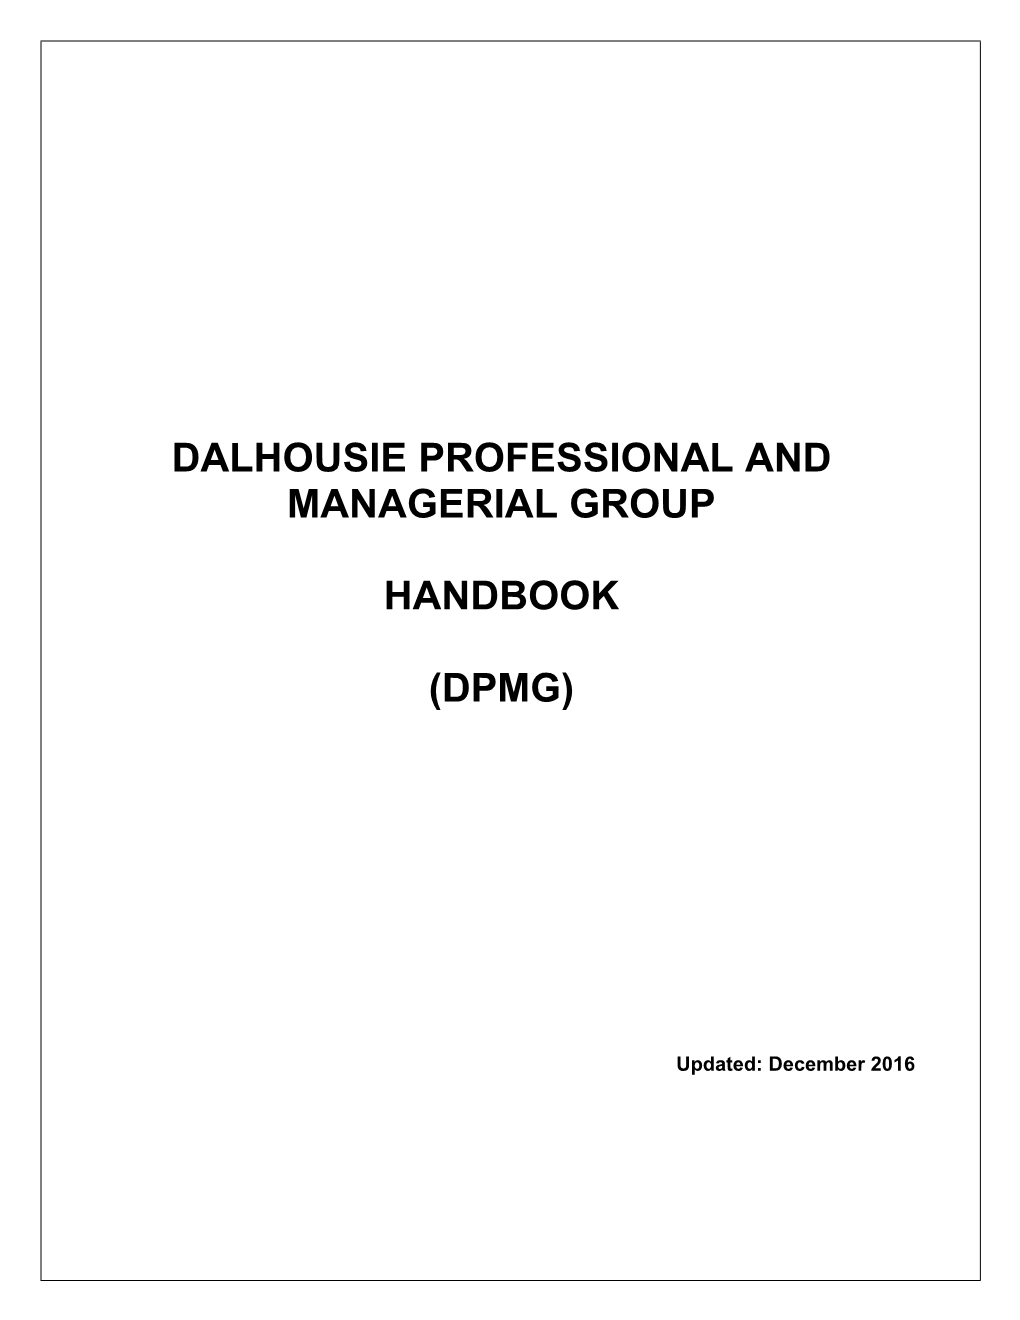 DPMG Handbook